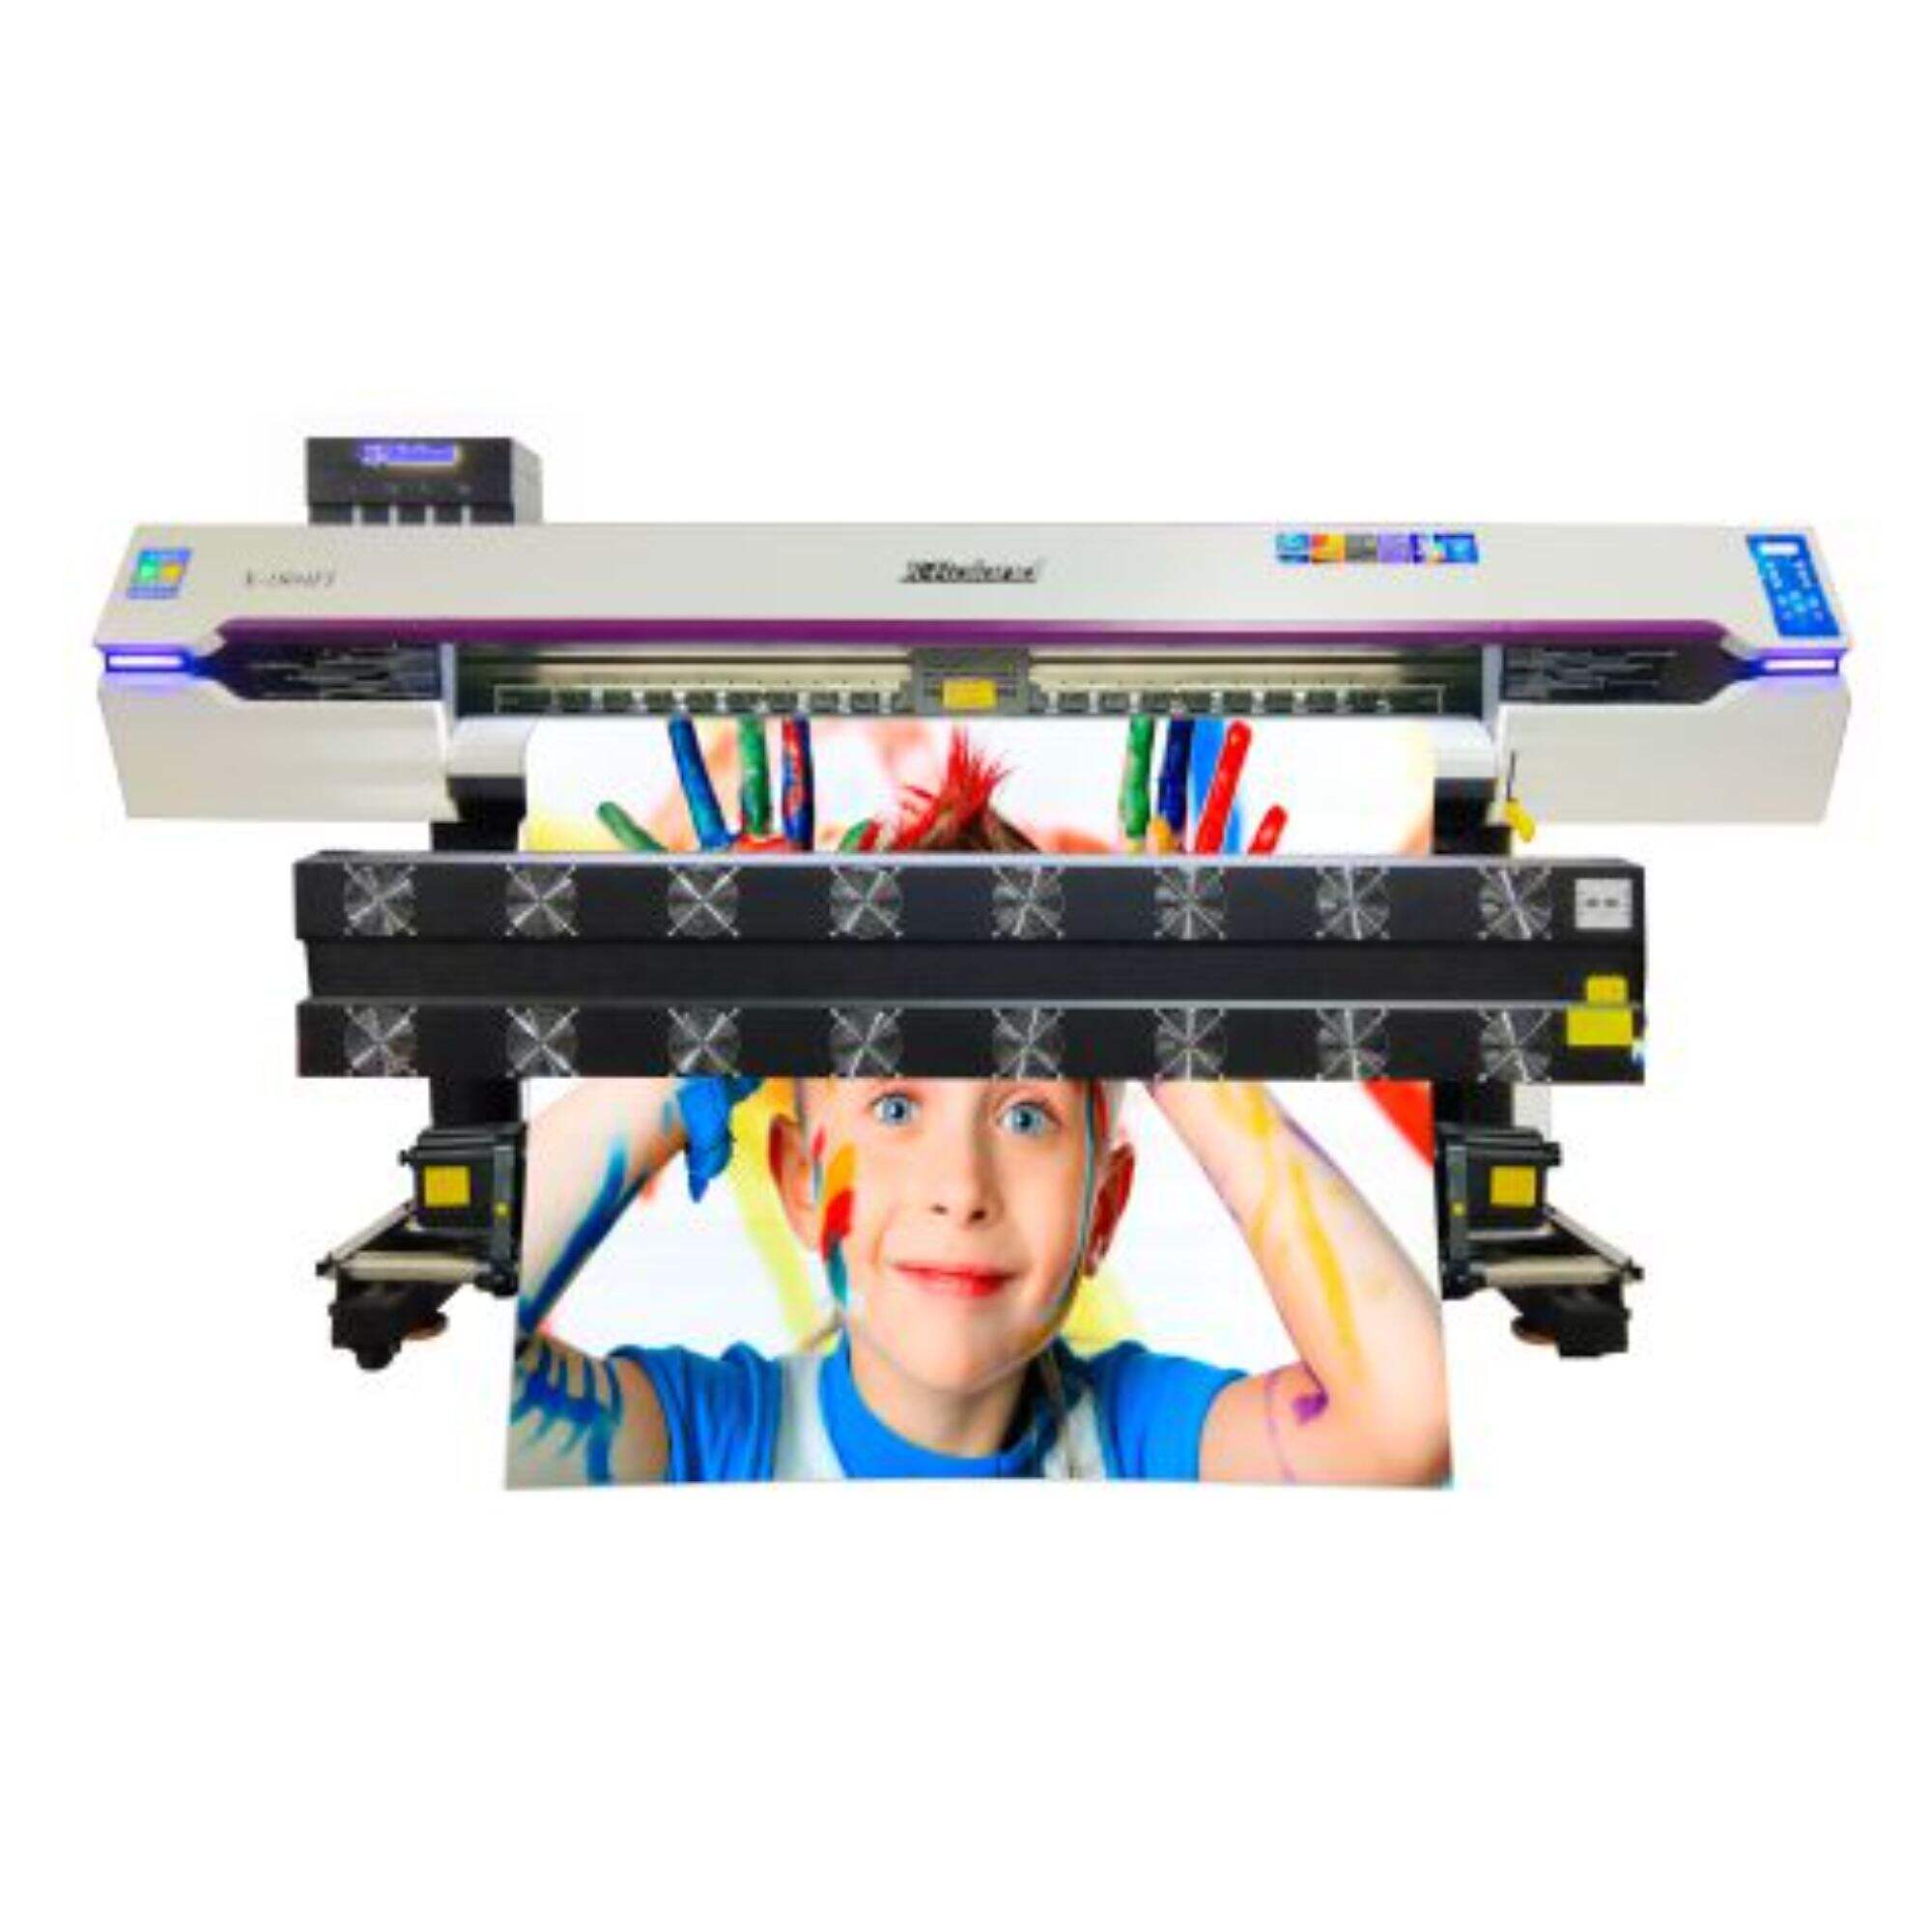 XL-1804F Indoor/outdoor printer